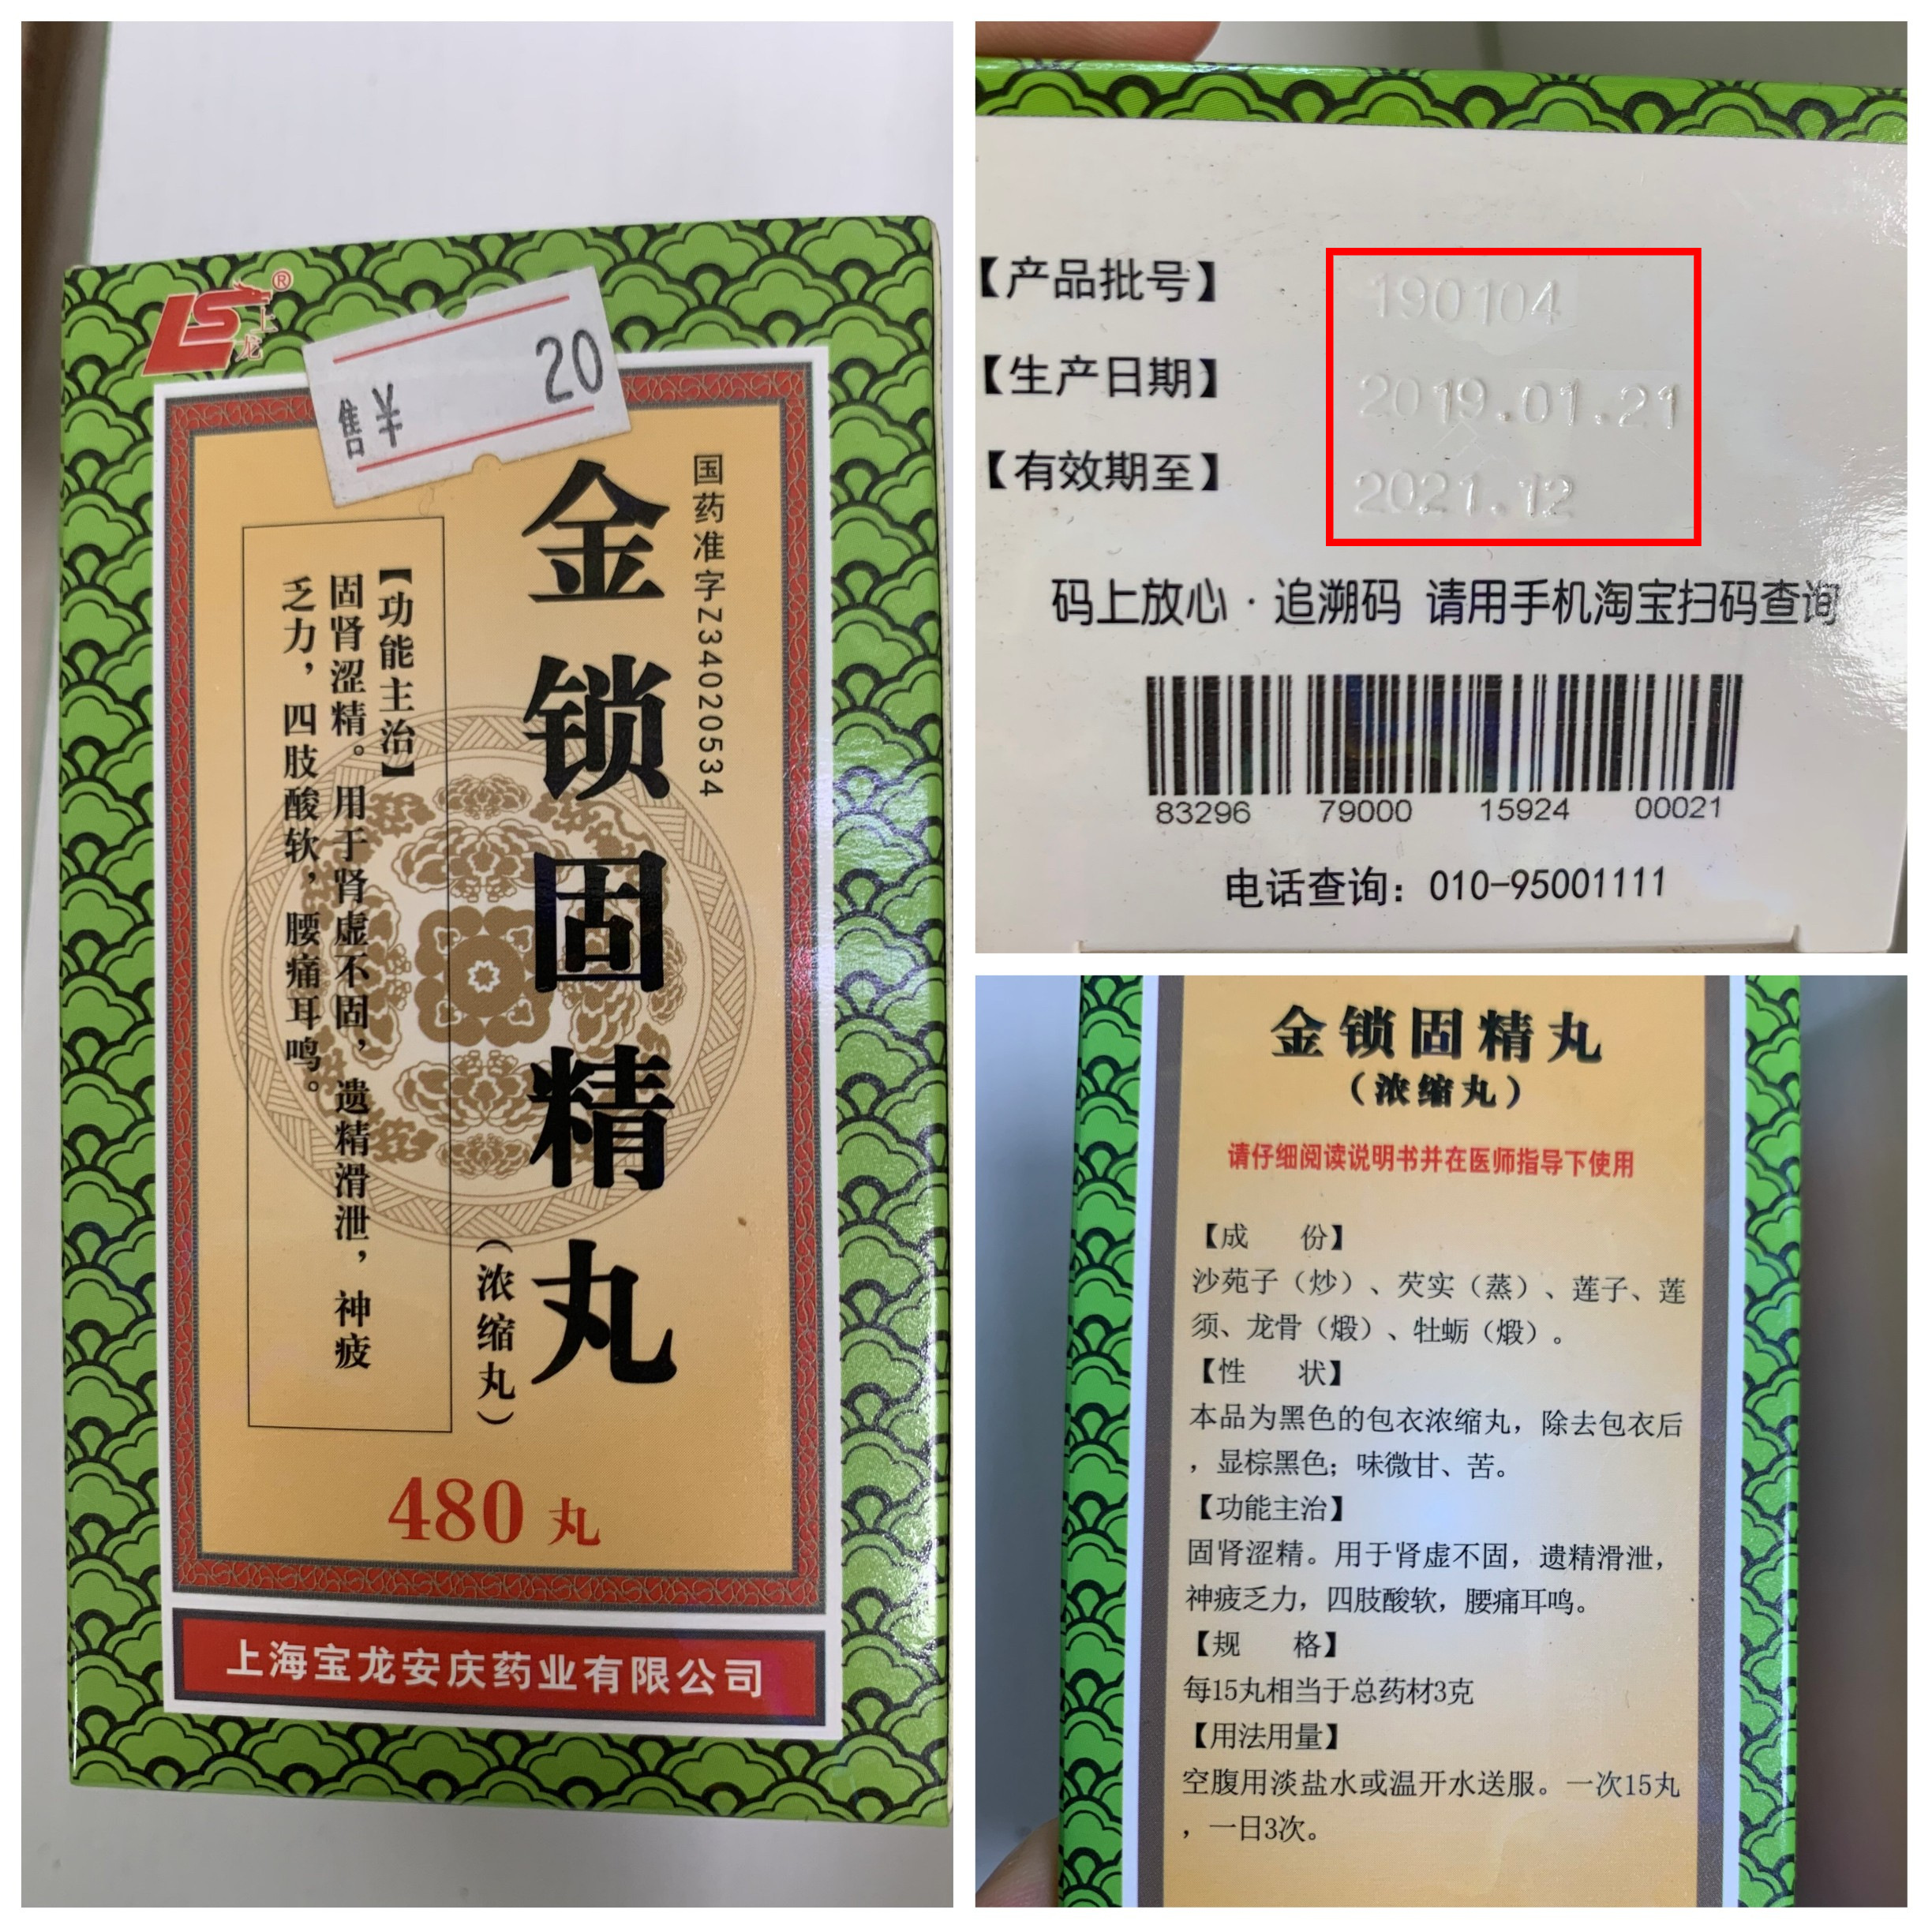 广西柳州两家药店销售过时药品被罚